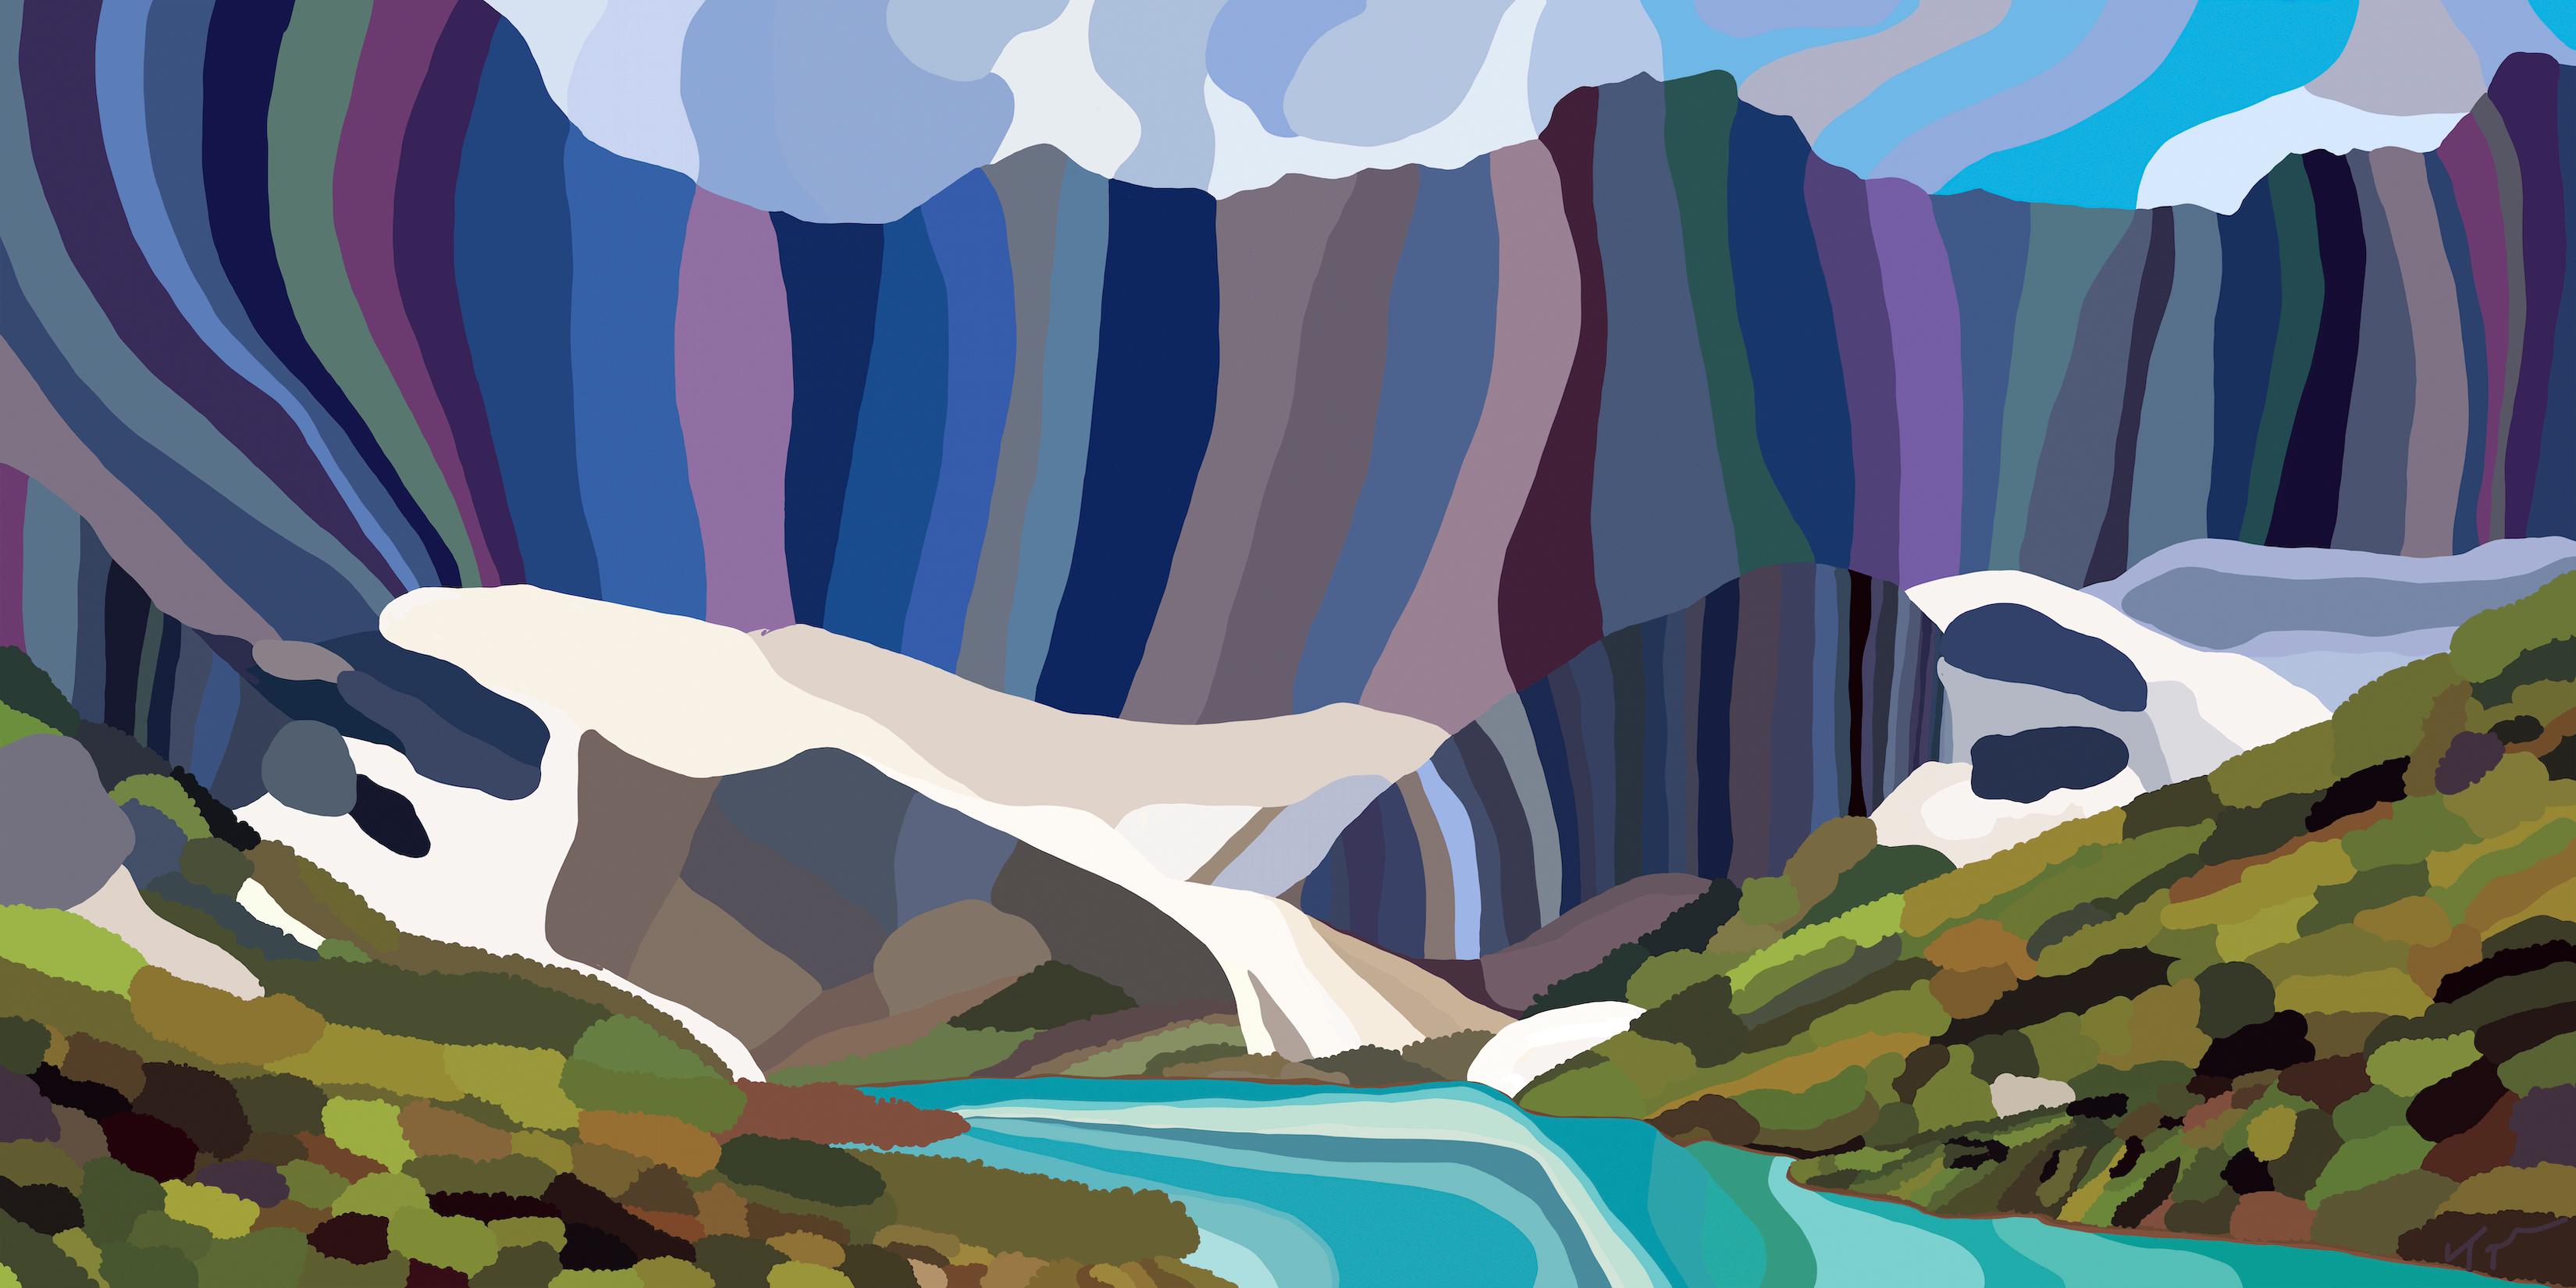 Topher Straus Landscape Painting – Glacier National Park, Moderne Contemporary Impressionist Landscape, 2019, Ltd Ed